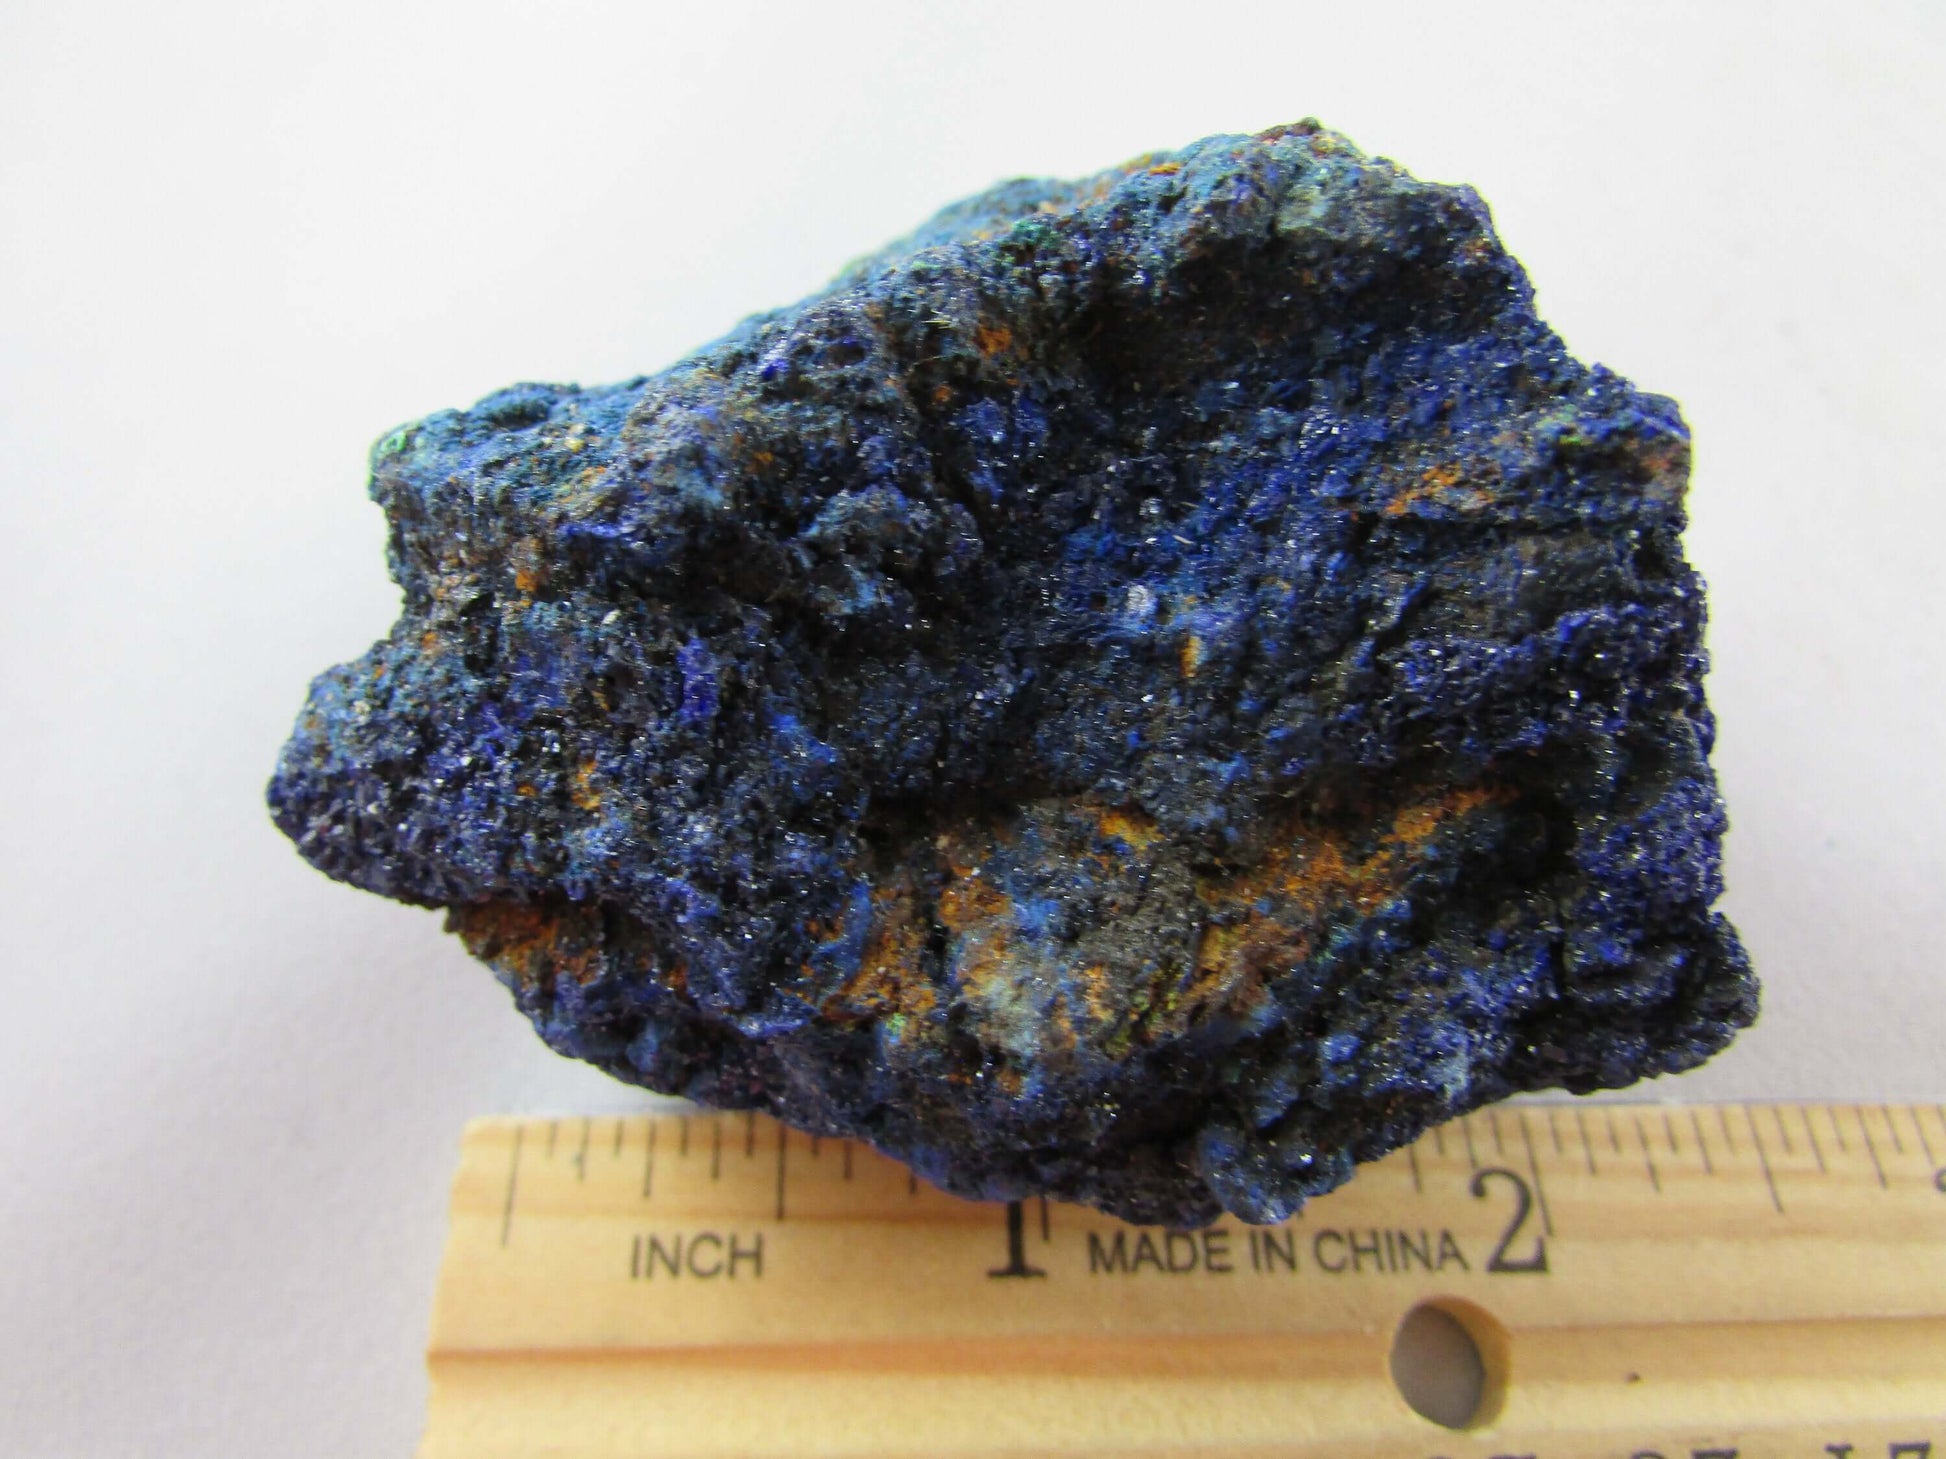 azurite malachite natural rough unpolished mineral